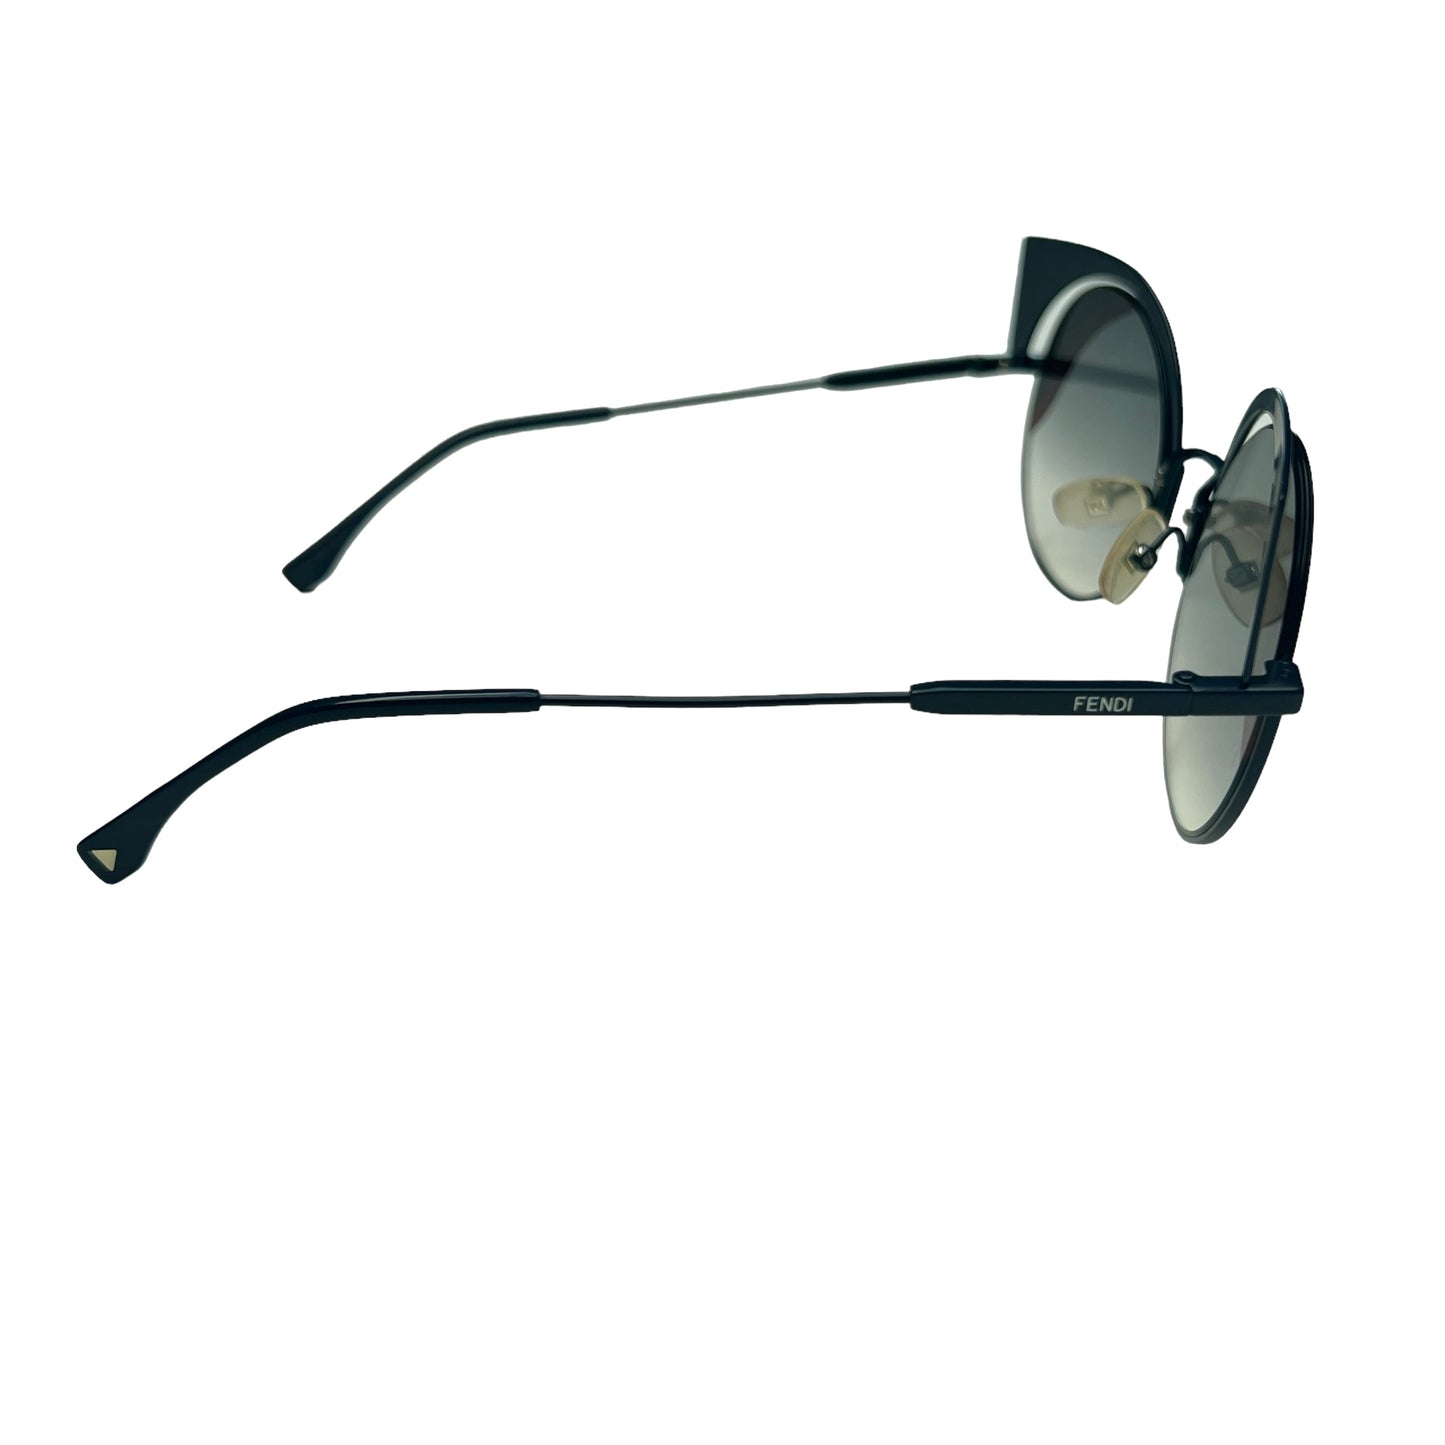 Round Cat-Eye Sunglasses